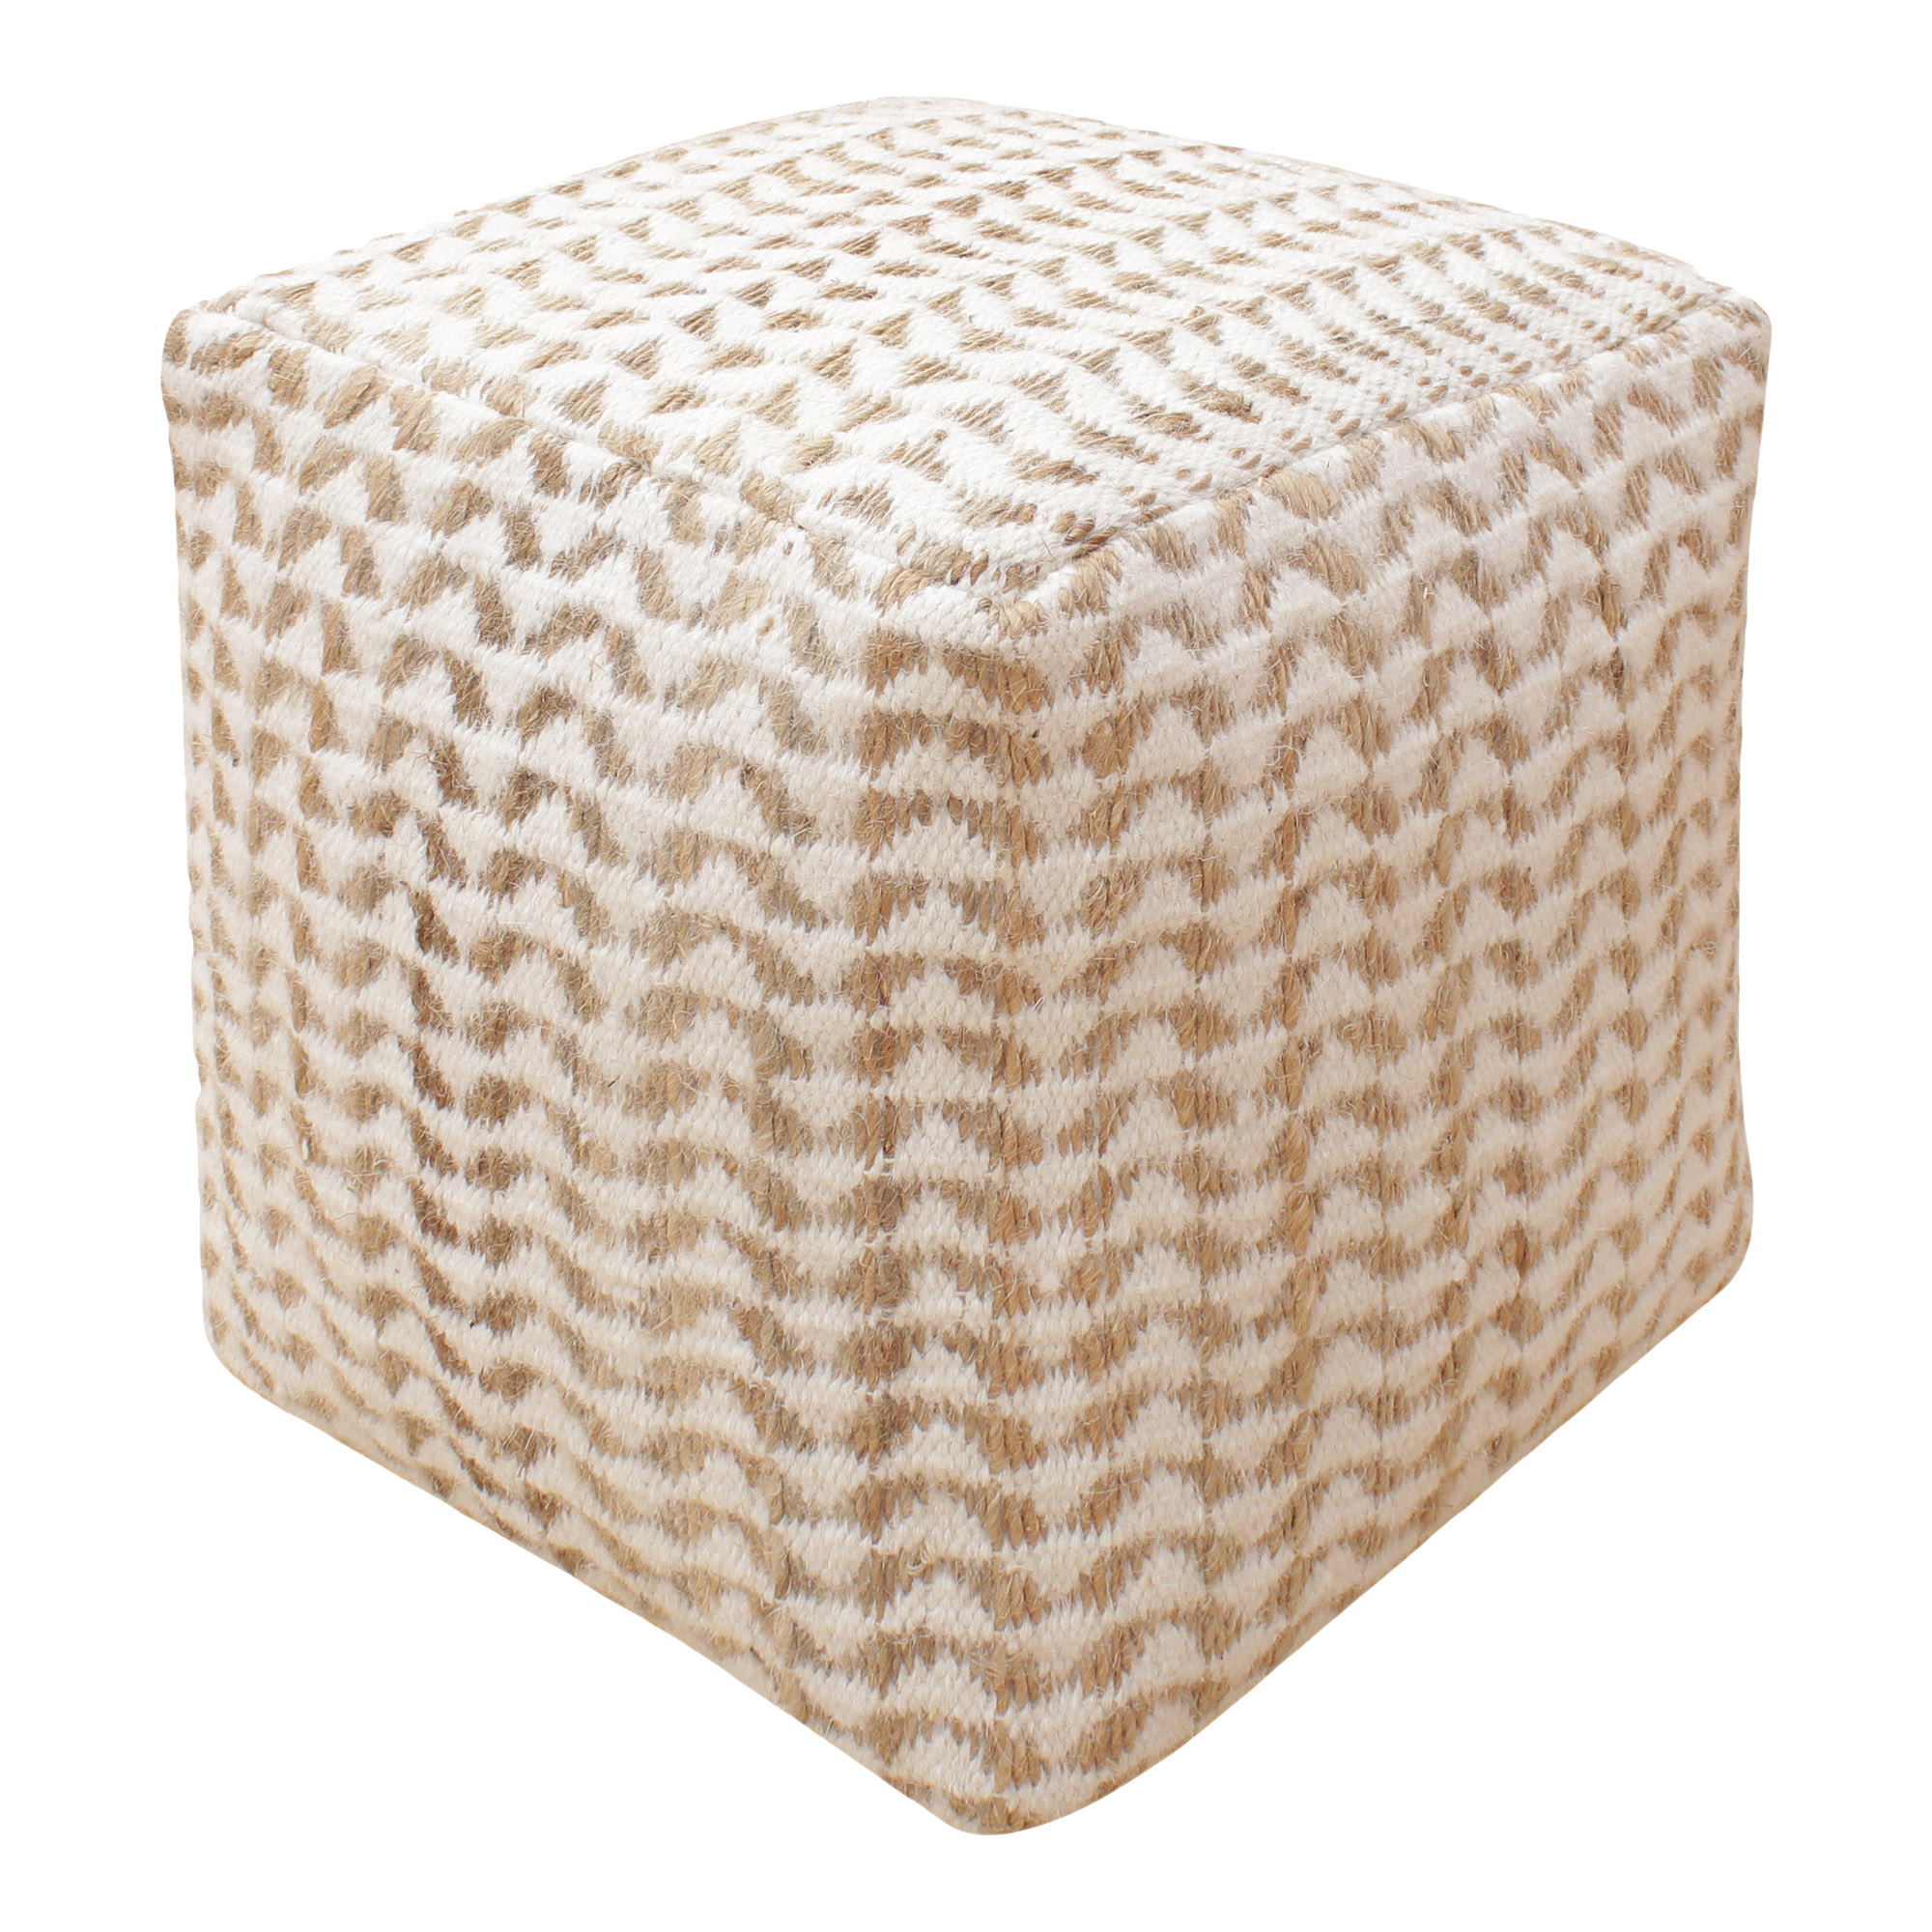 Billede af HOUSE NORDIC Vapi puf, håndvævet, kvadratisk - råhvid og natur stof (40x40)